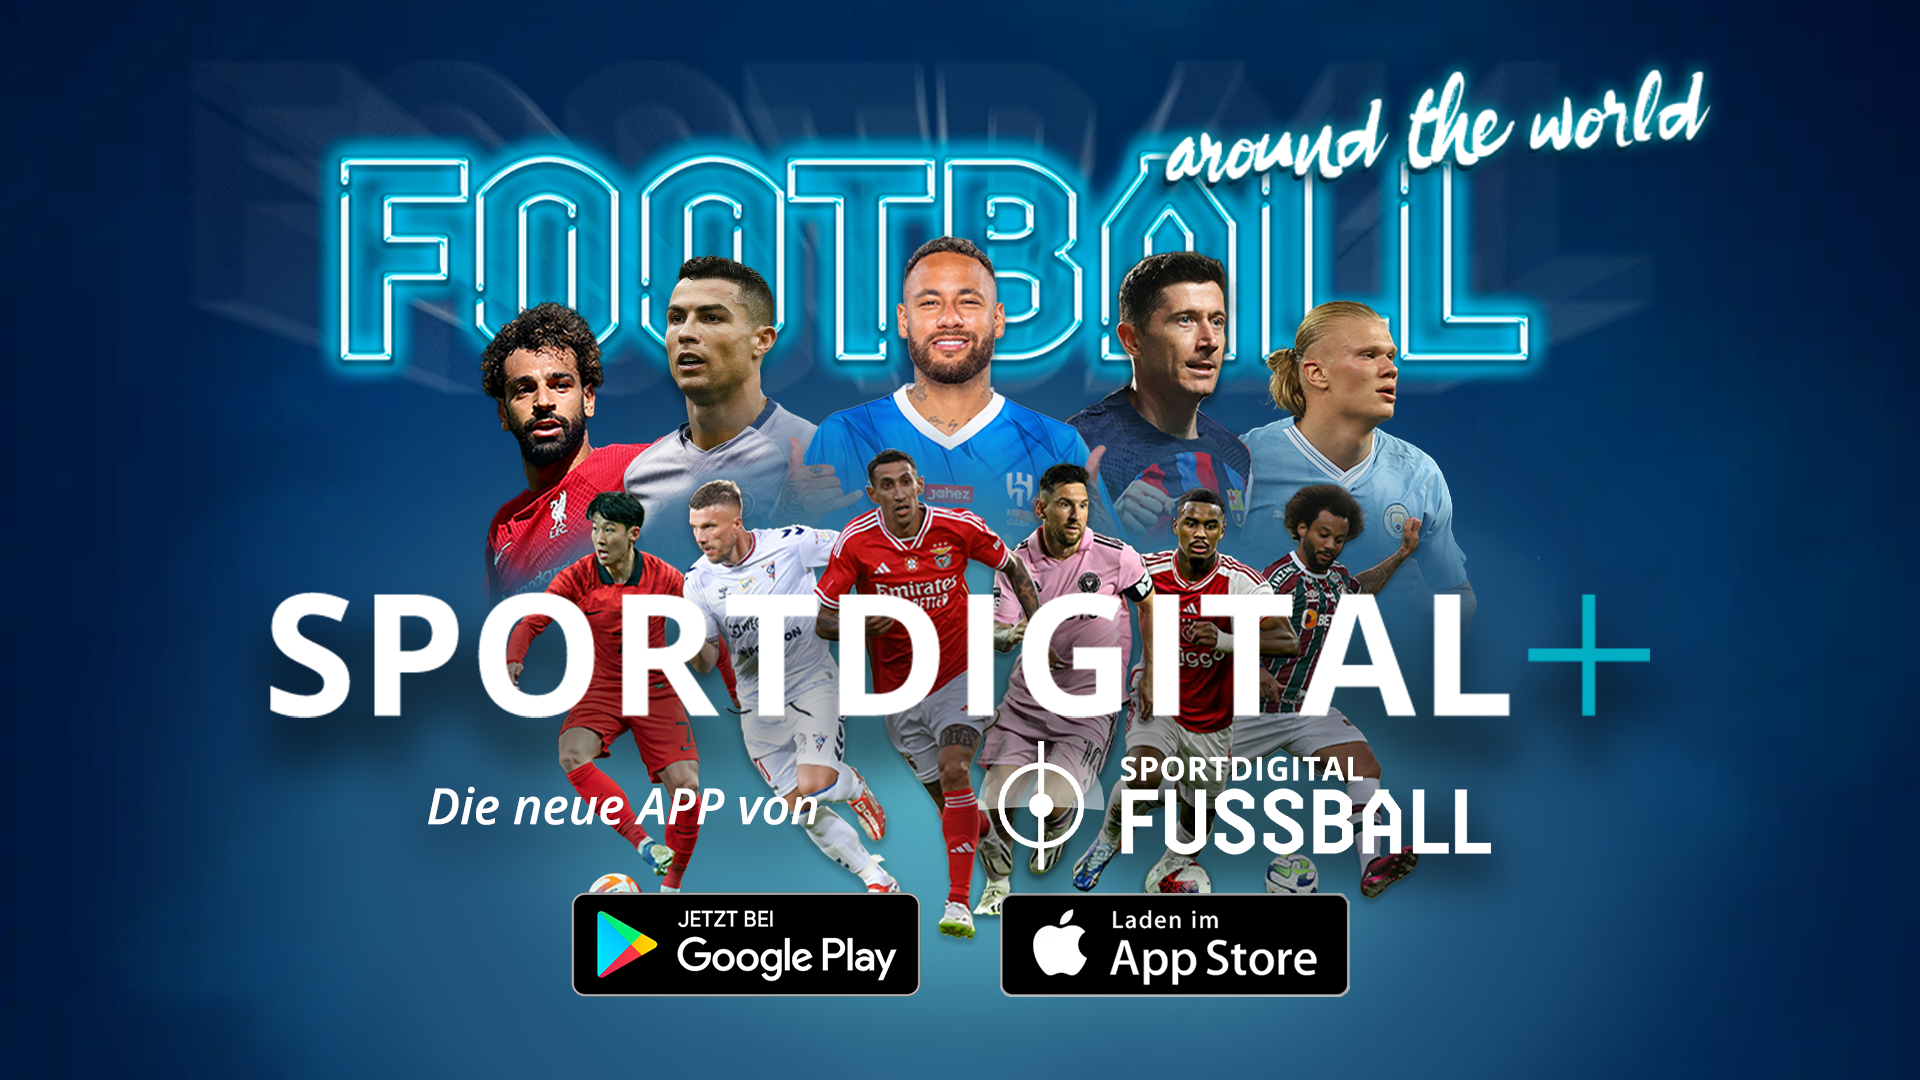 Sportdigital+ ist da! Sportdigital FUSSBALL bringt neue App auf den Markt